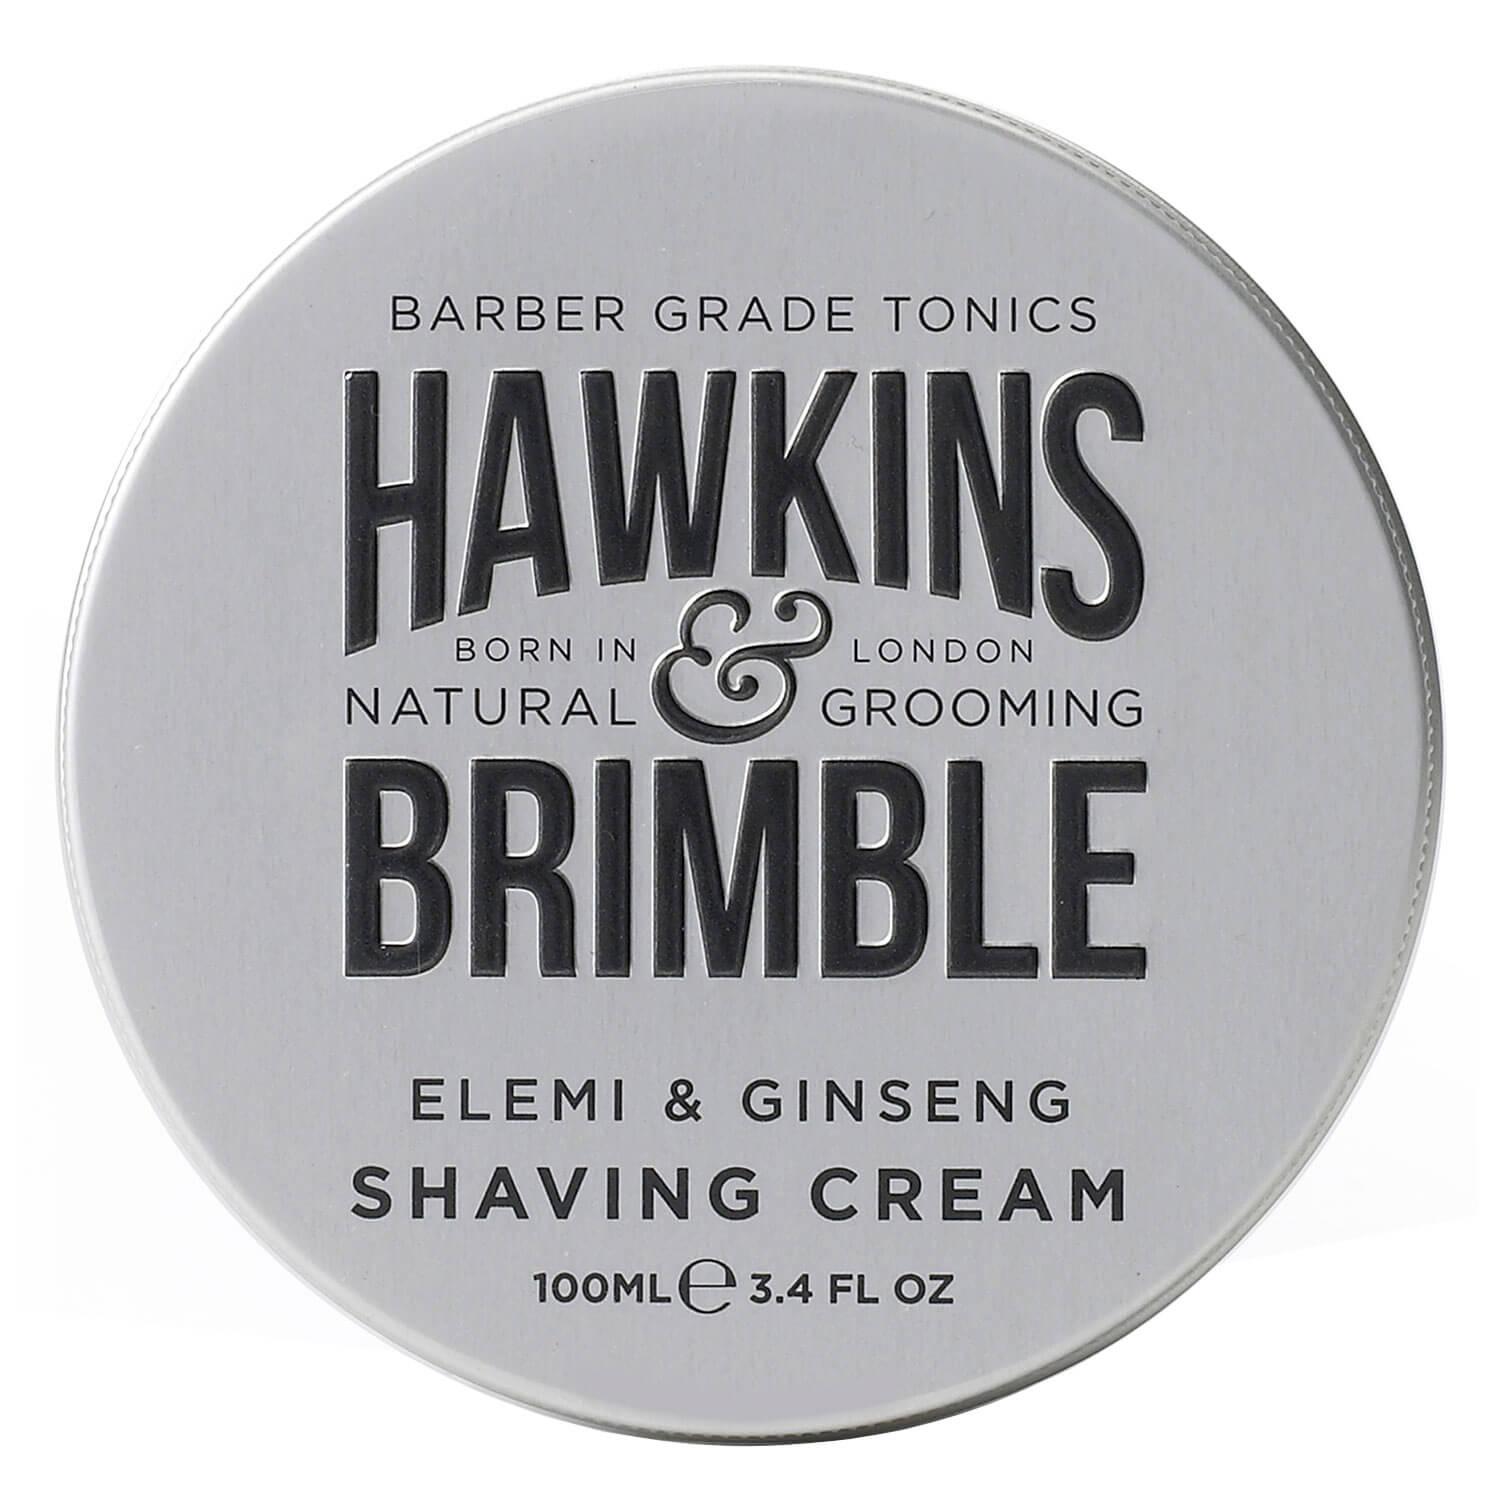 Hawkins & Brimble - Shaving Cream 